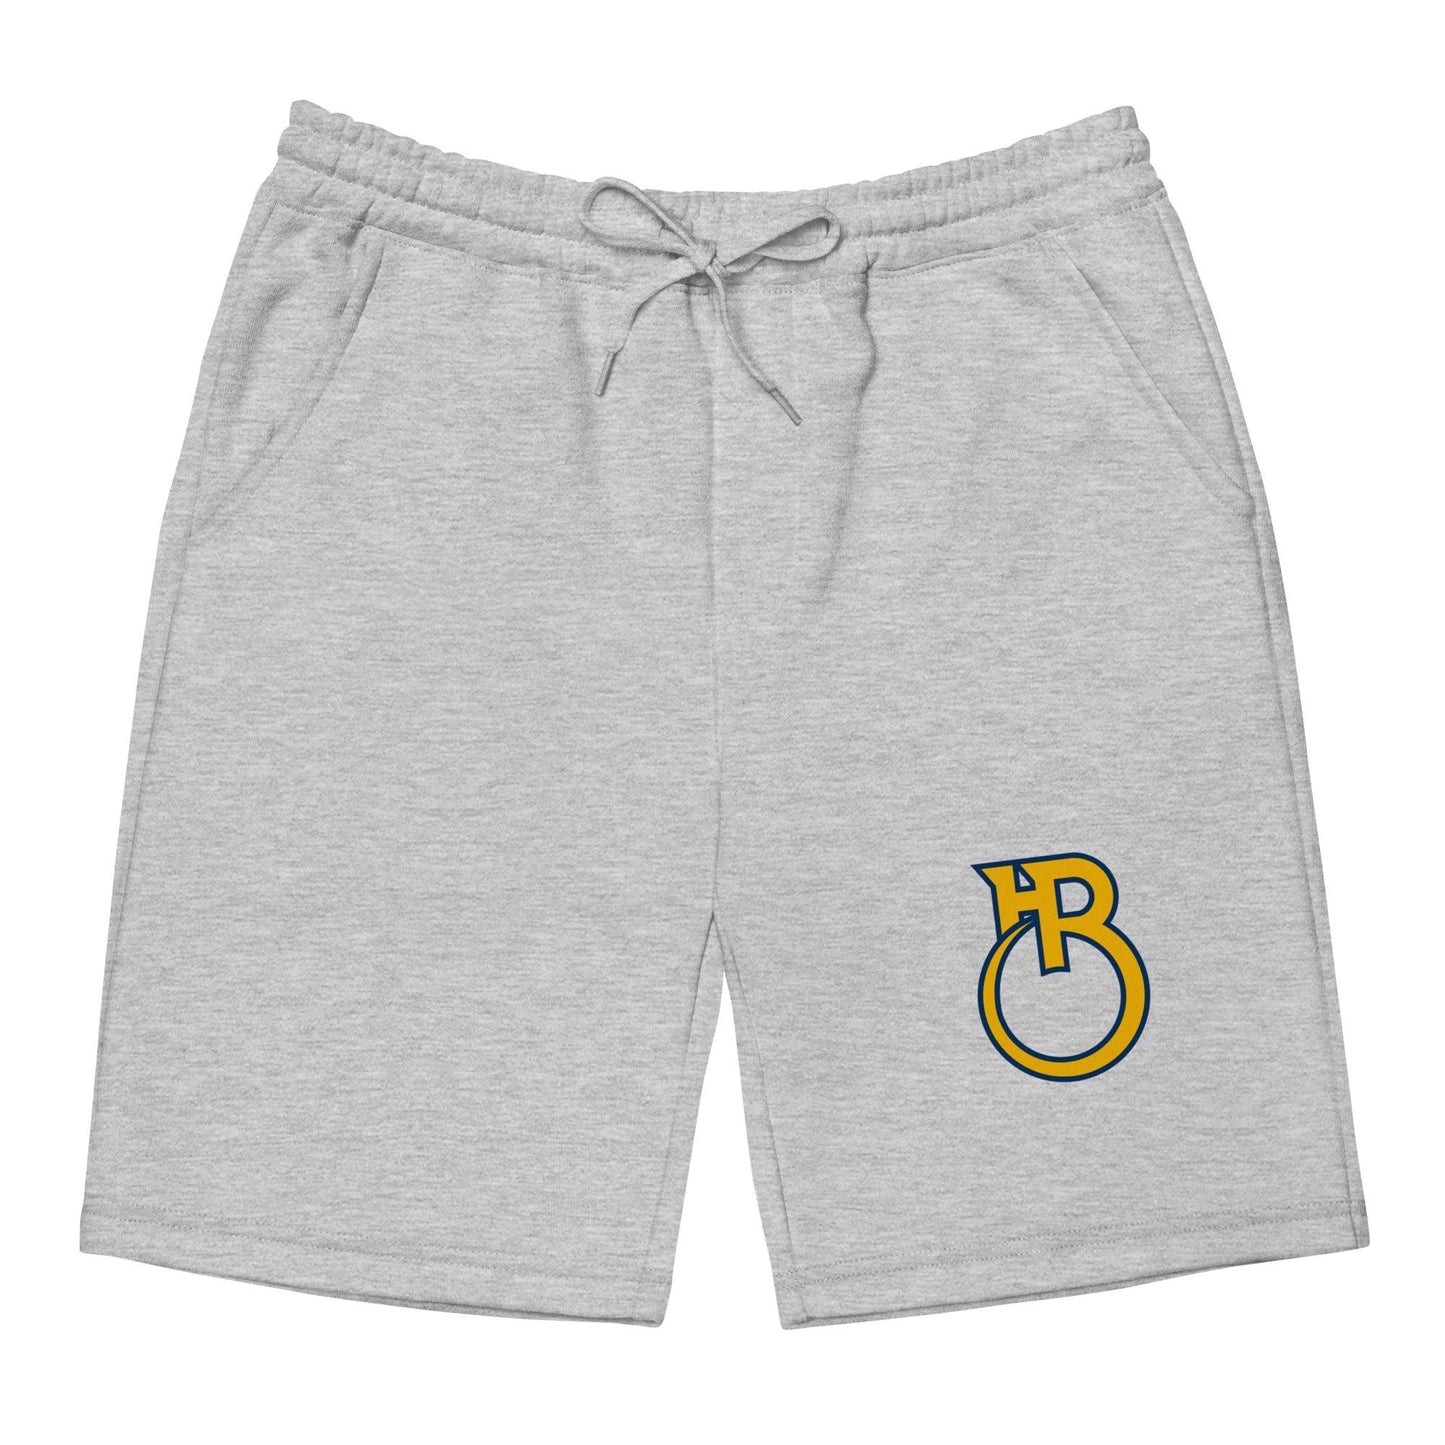 Hershey Black "HB" Men's fleece shorts - Fan Arch